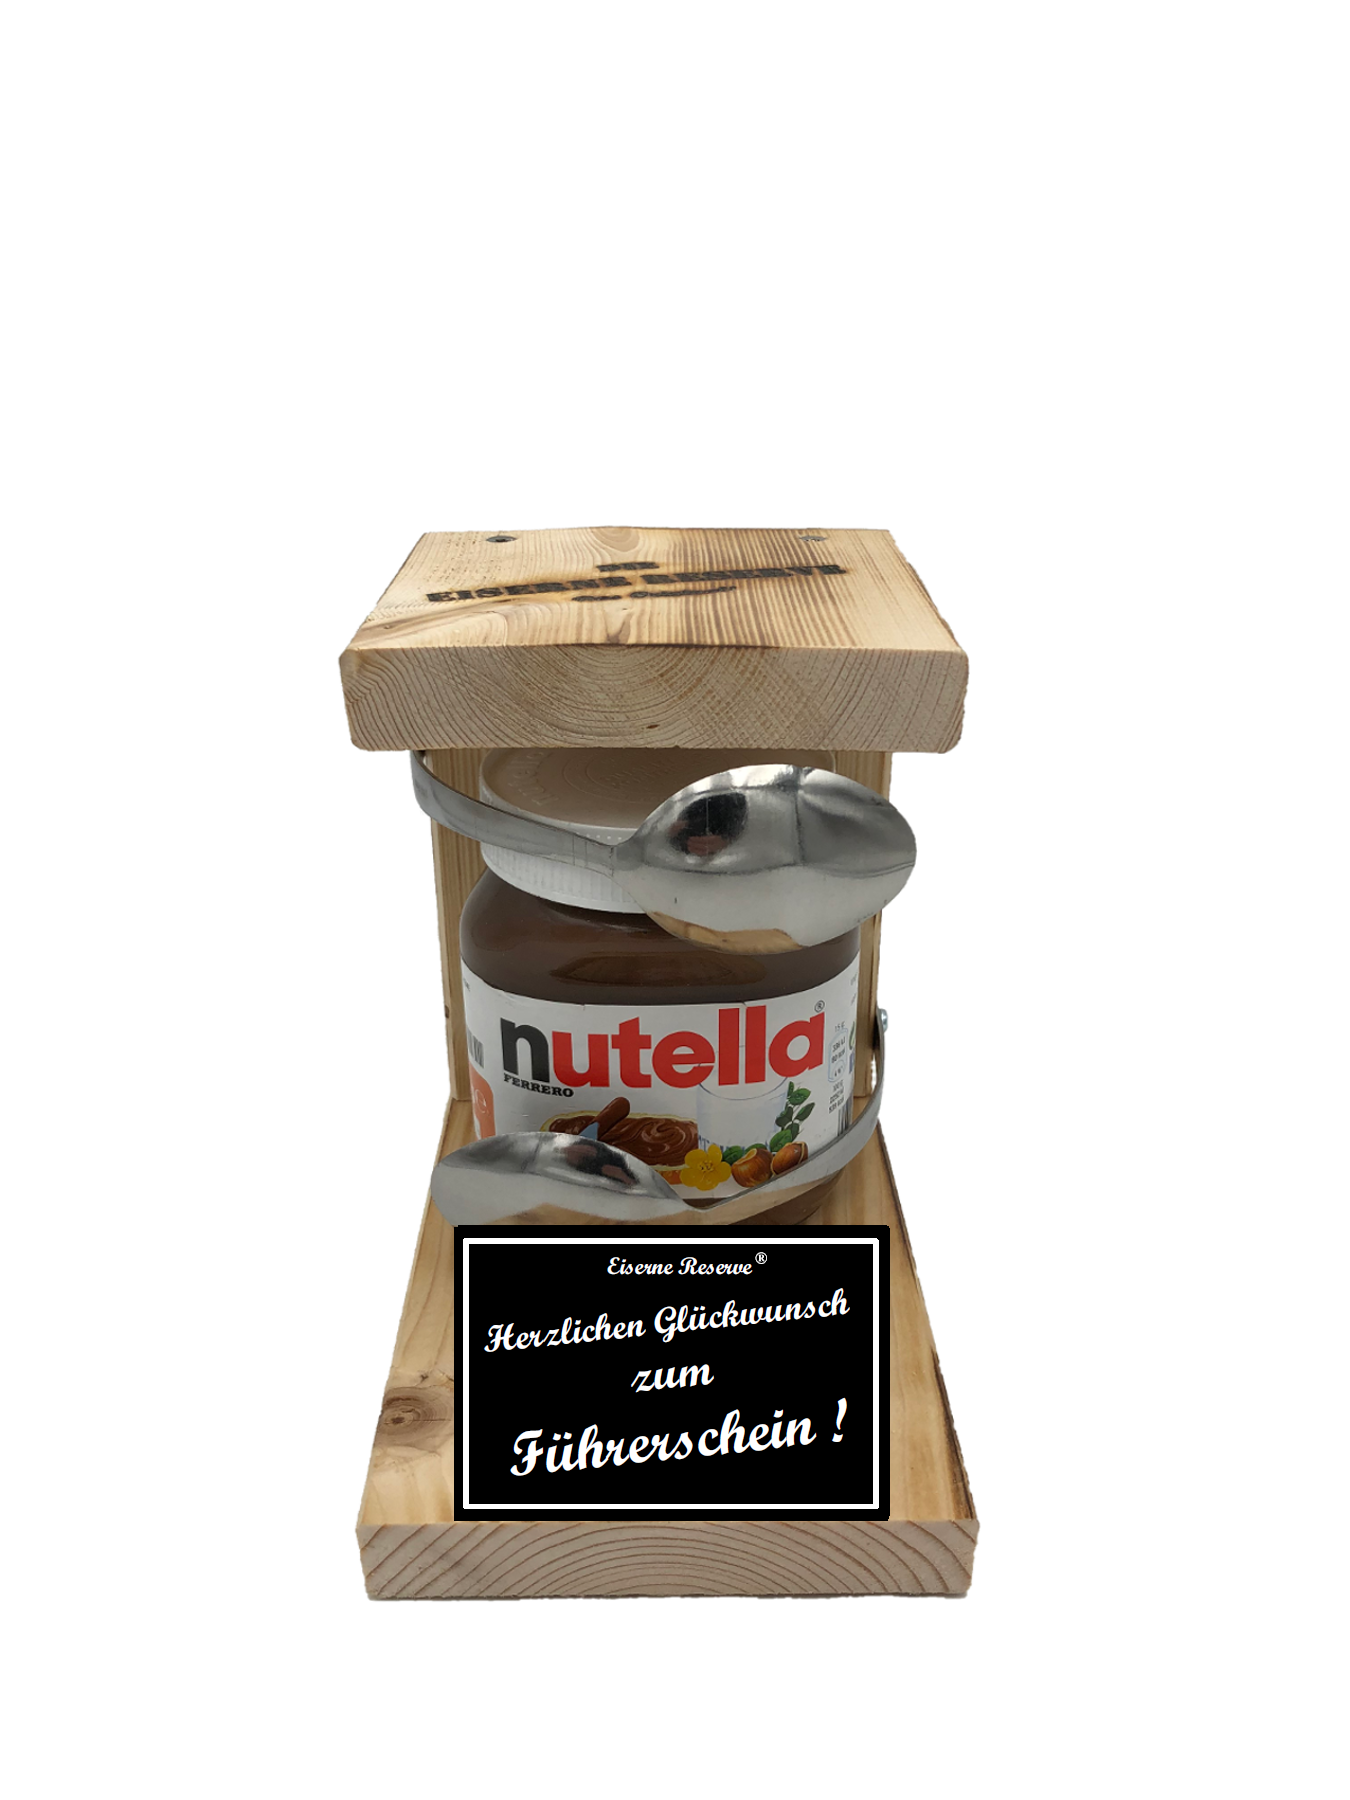 Herzlichen Glückwunsch zum Führerschein Löffel Nutella Geschenk - Die  Nutella Geschenkidee